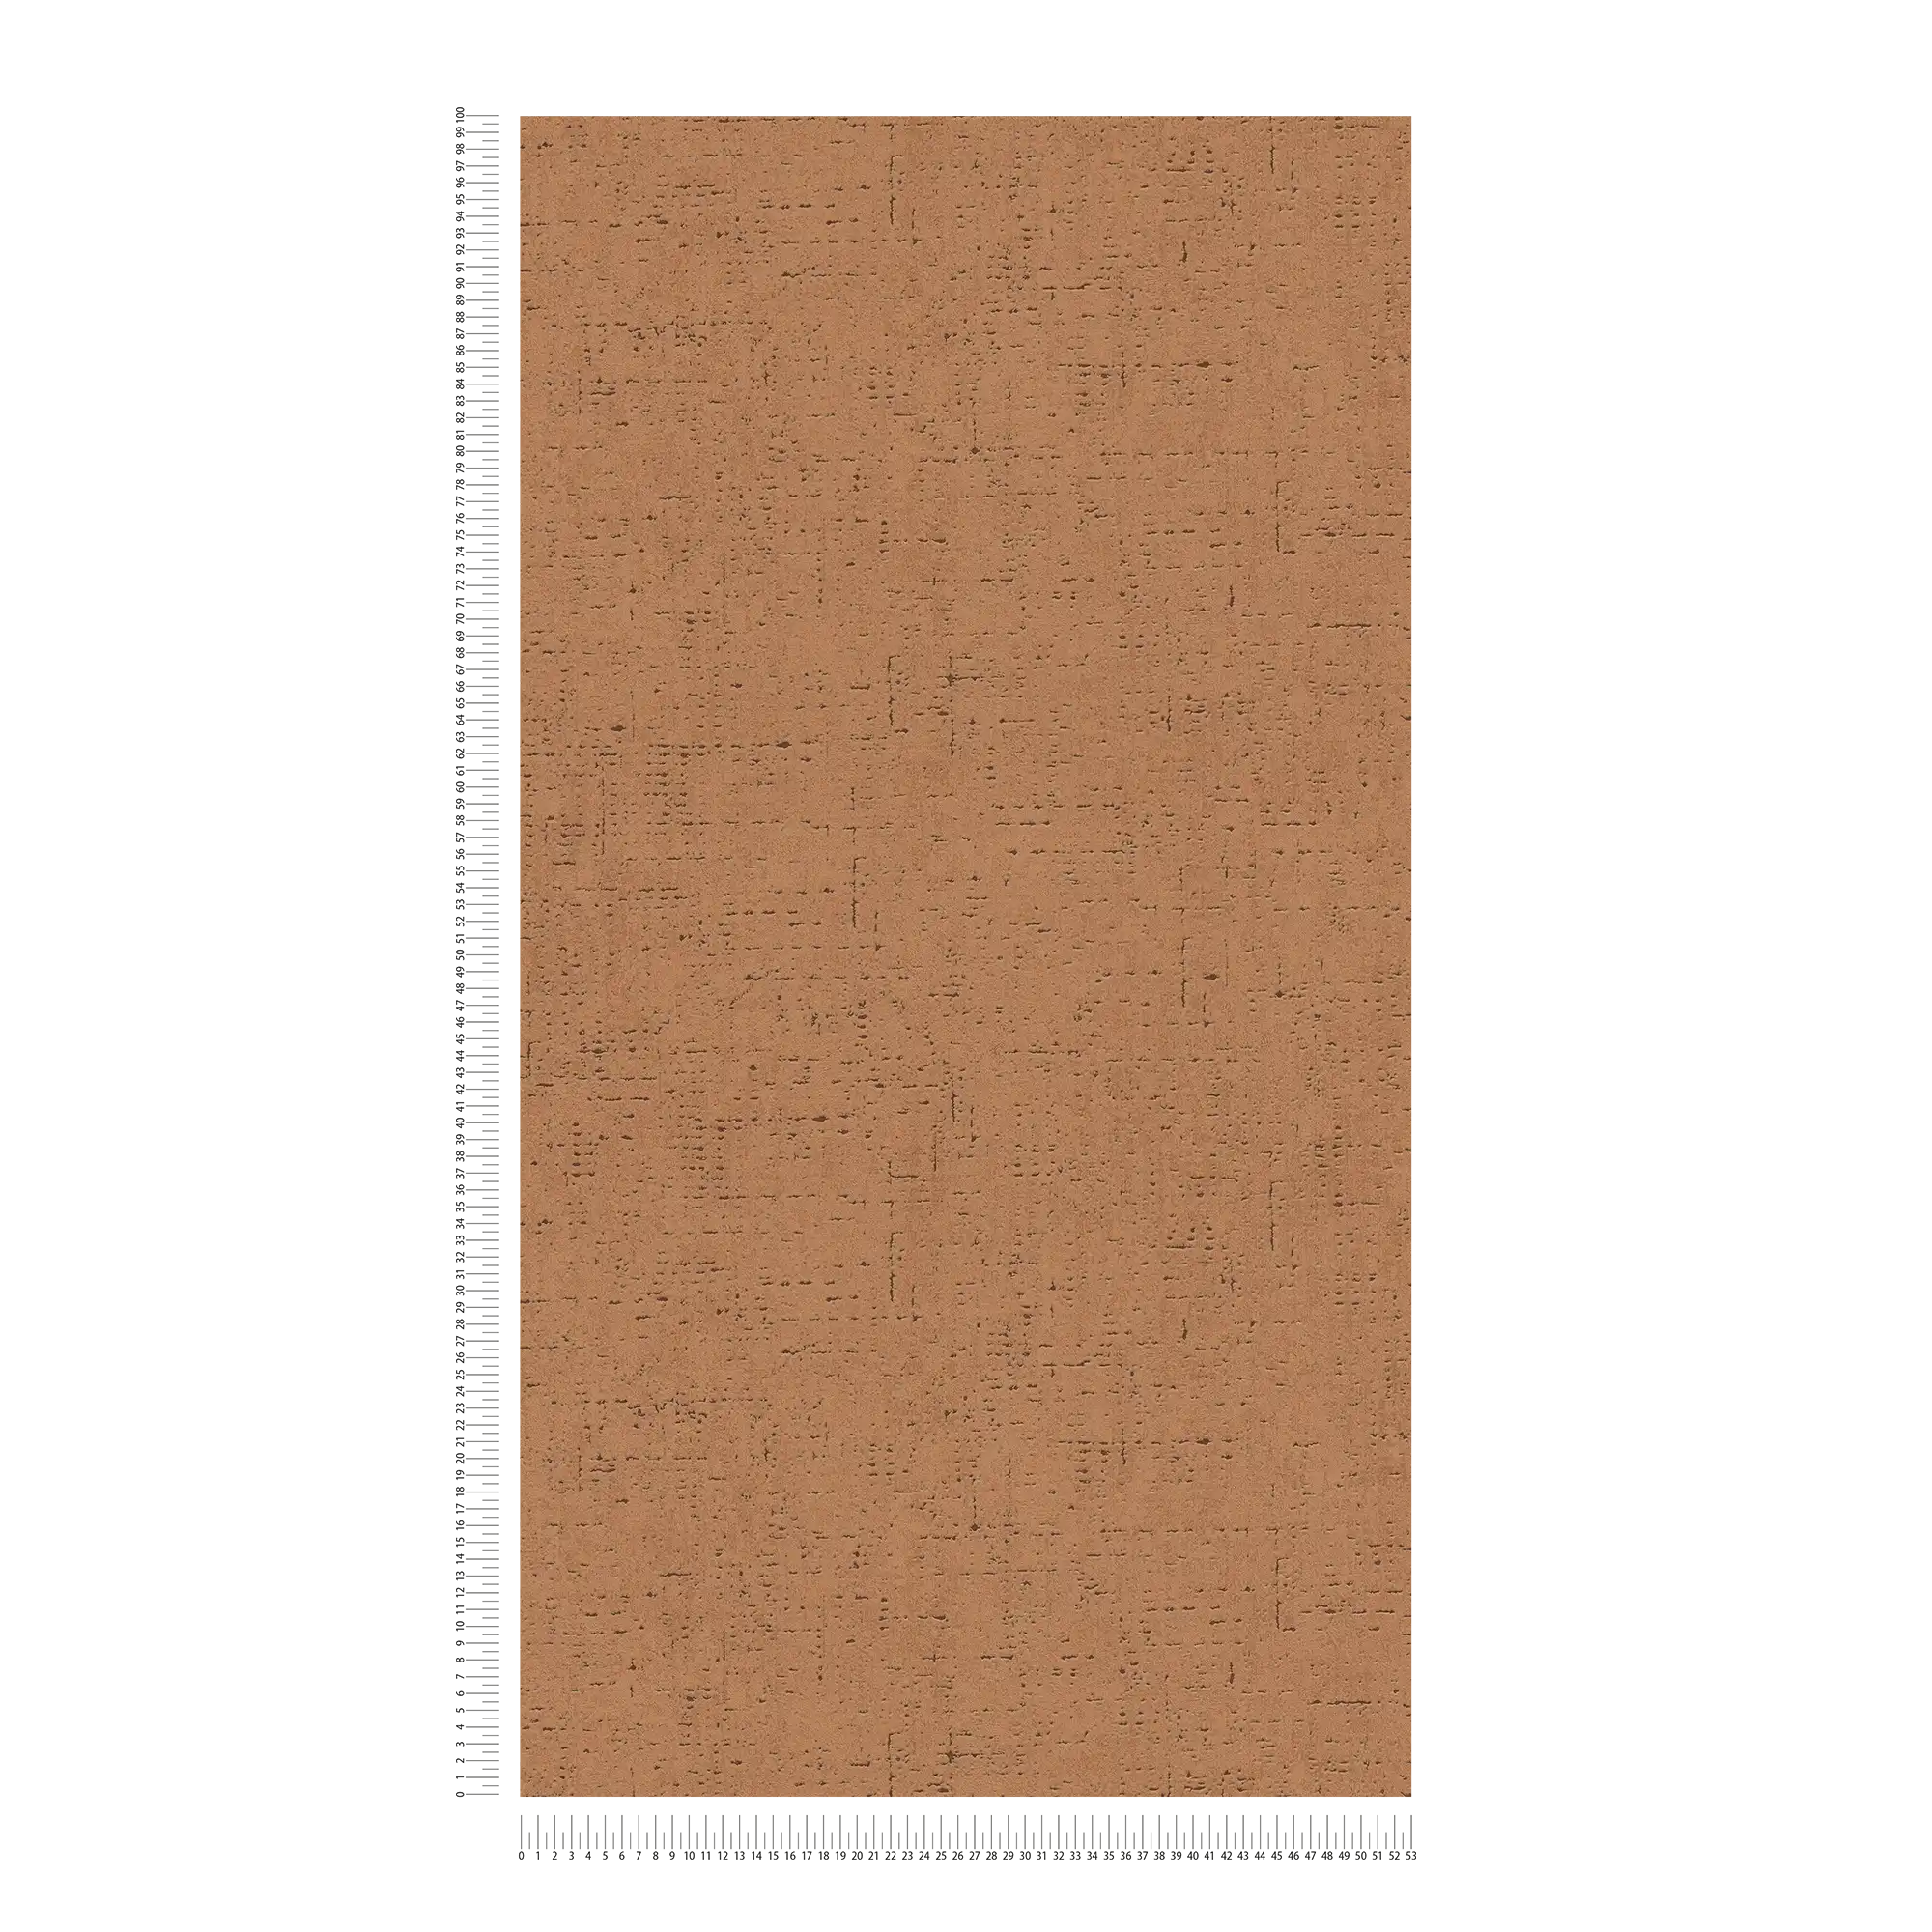             Eenheidsbehang met kurkmotief & structuurpatroon - bruin, oranje
        